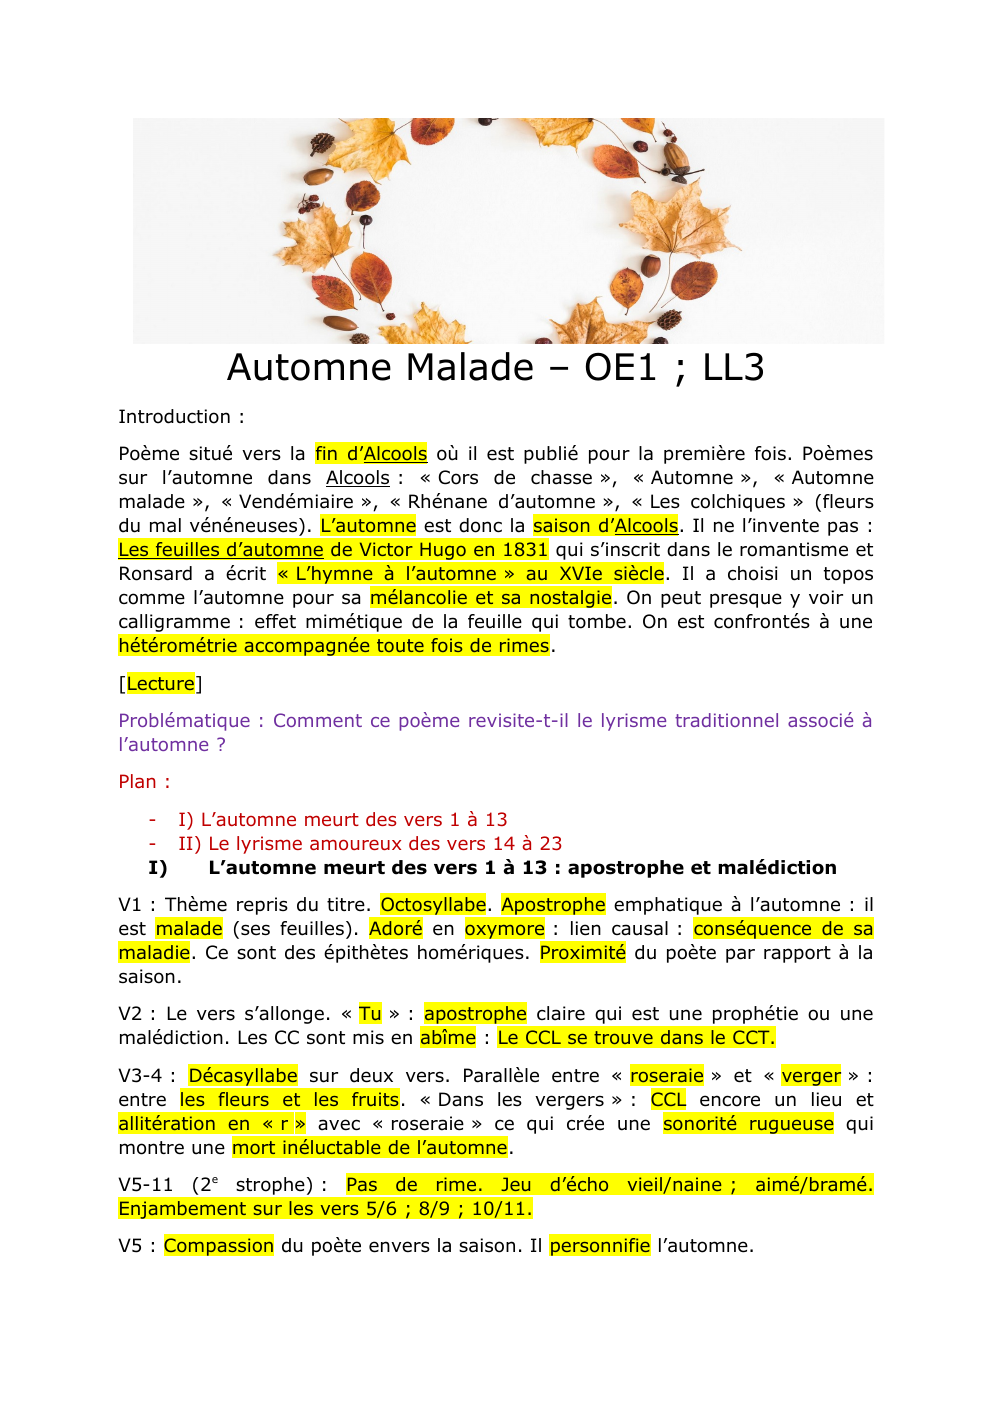 Prévisualisation du document Fiche ,analyse linéaire, Automne Malade Guillaume Apollinaire Bac Français